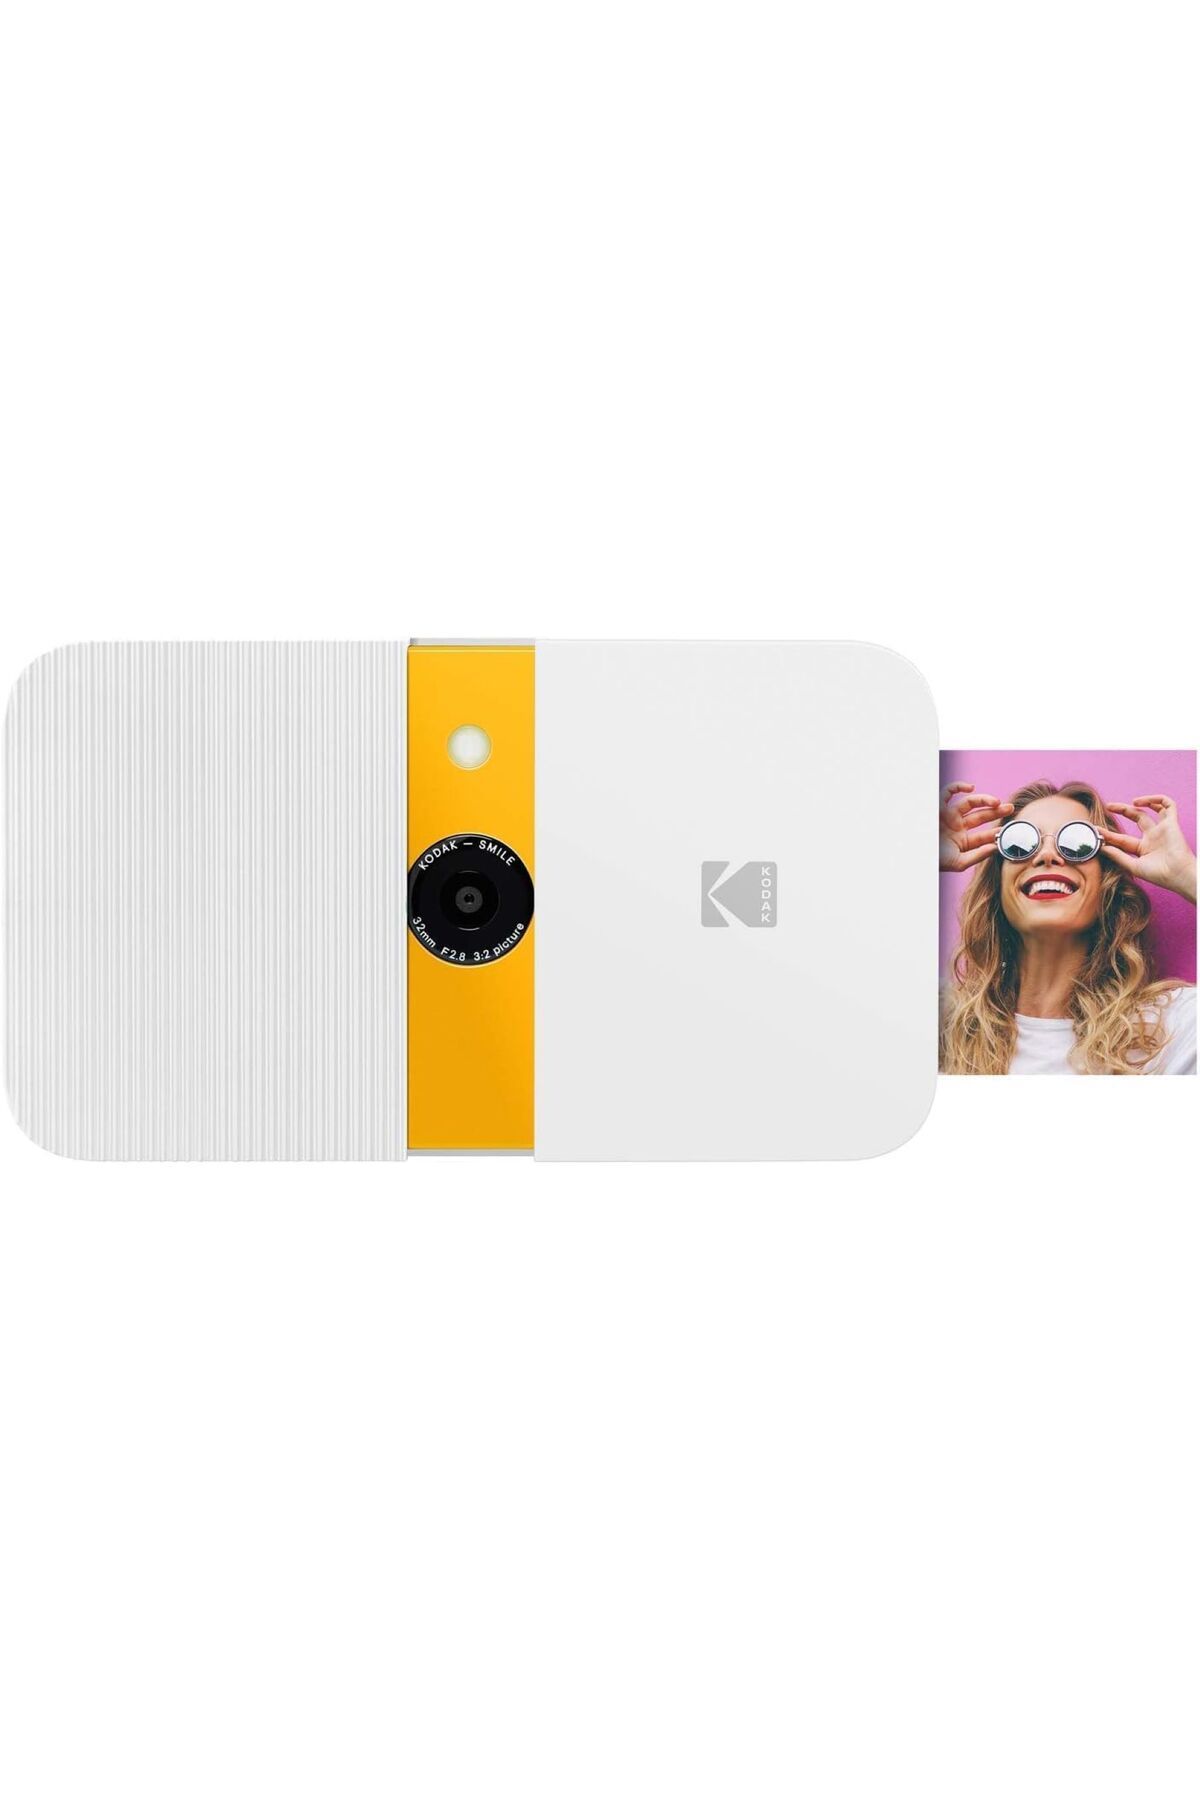 Kodak Dijital Anında Fotoğraf Makinesi: ZINK Yazıcılı, 10 MP, LCD Ekran - Beyaz/Sarı